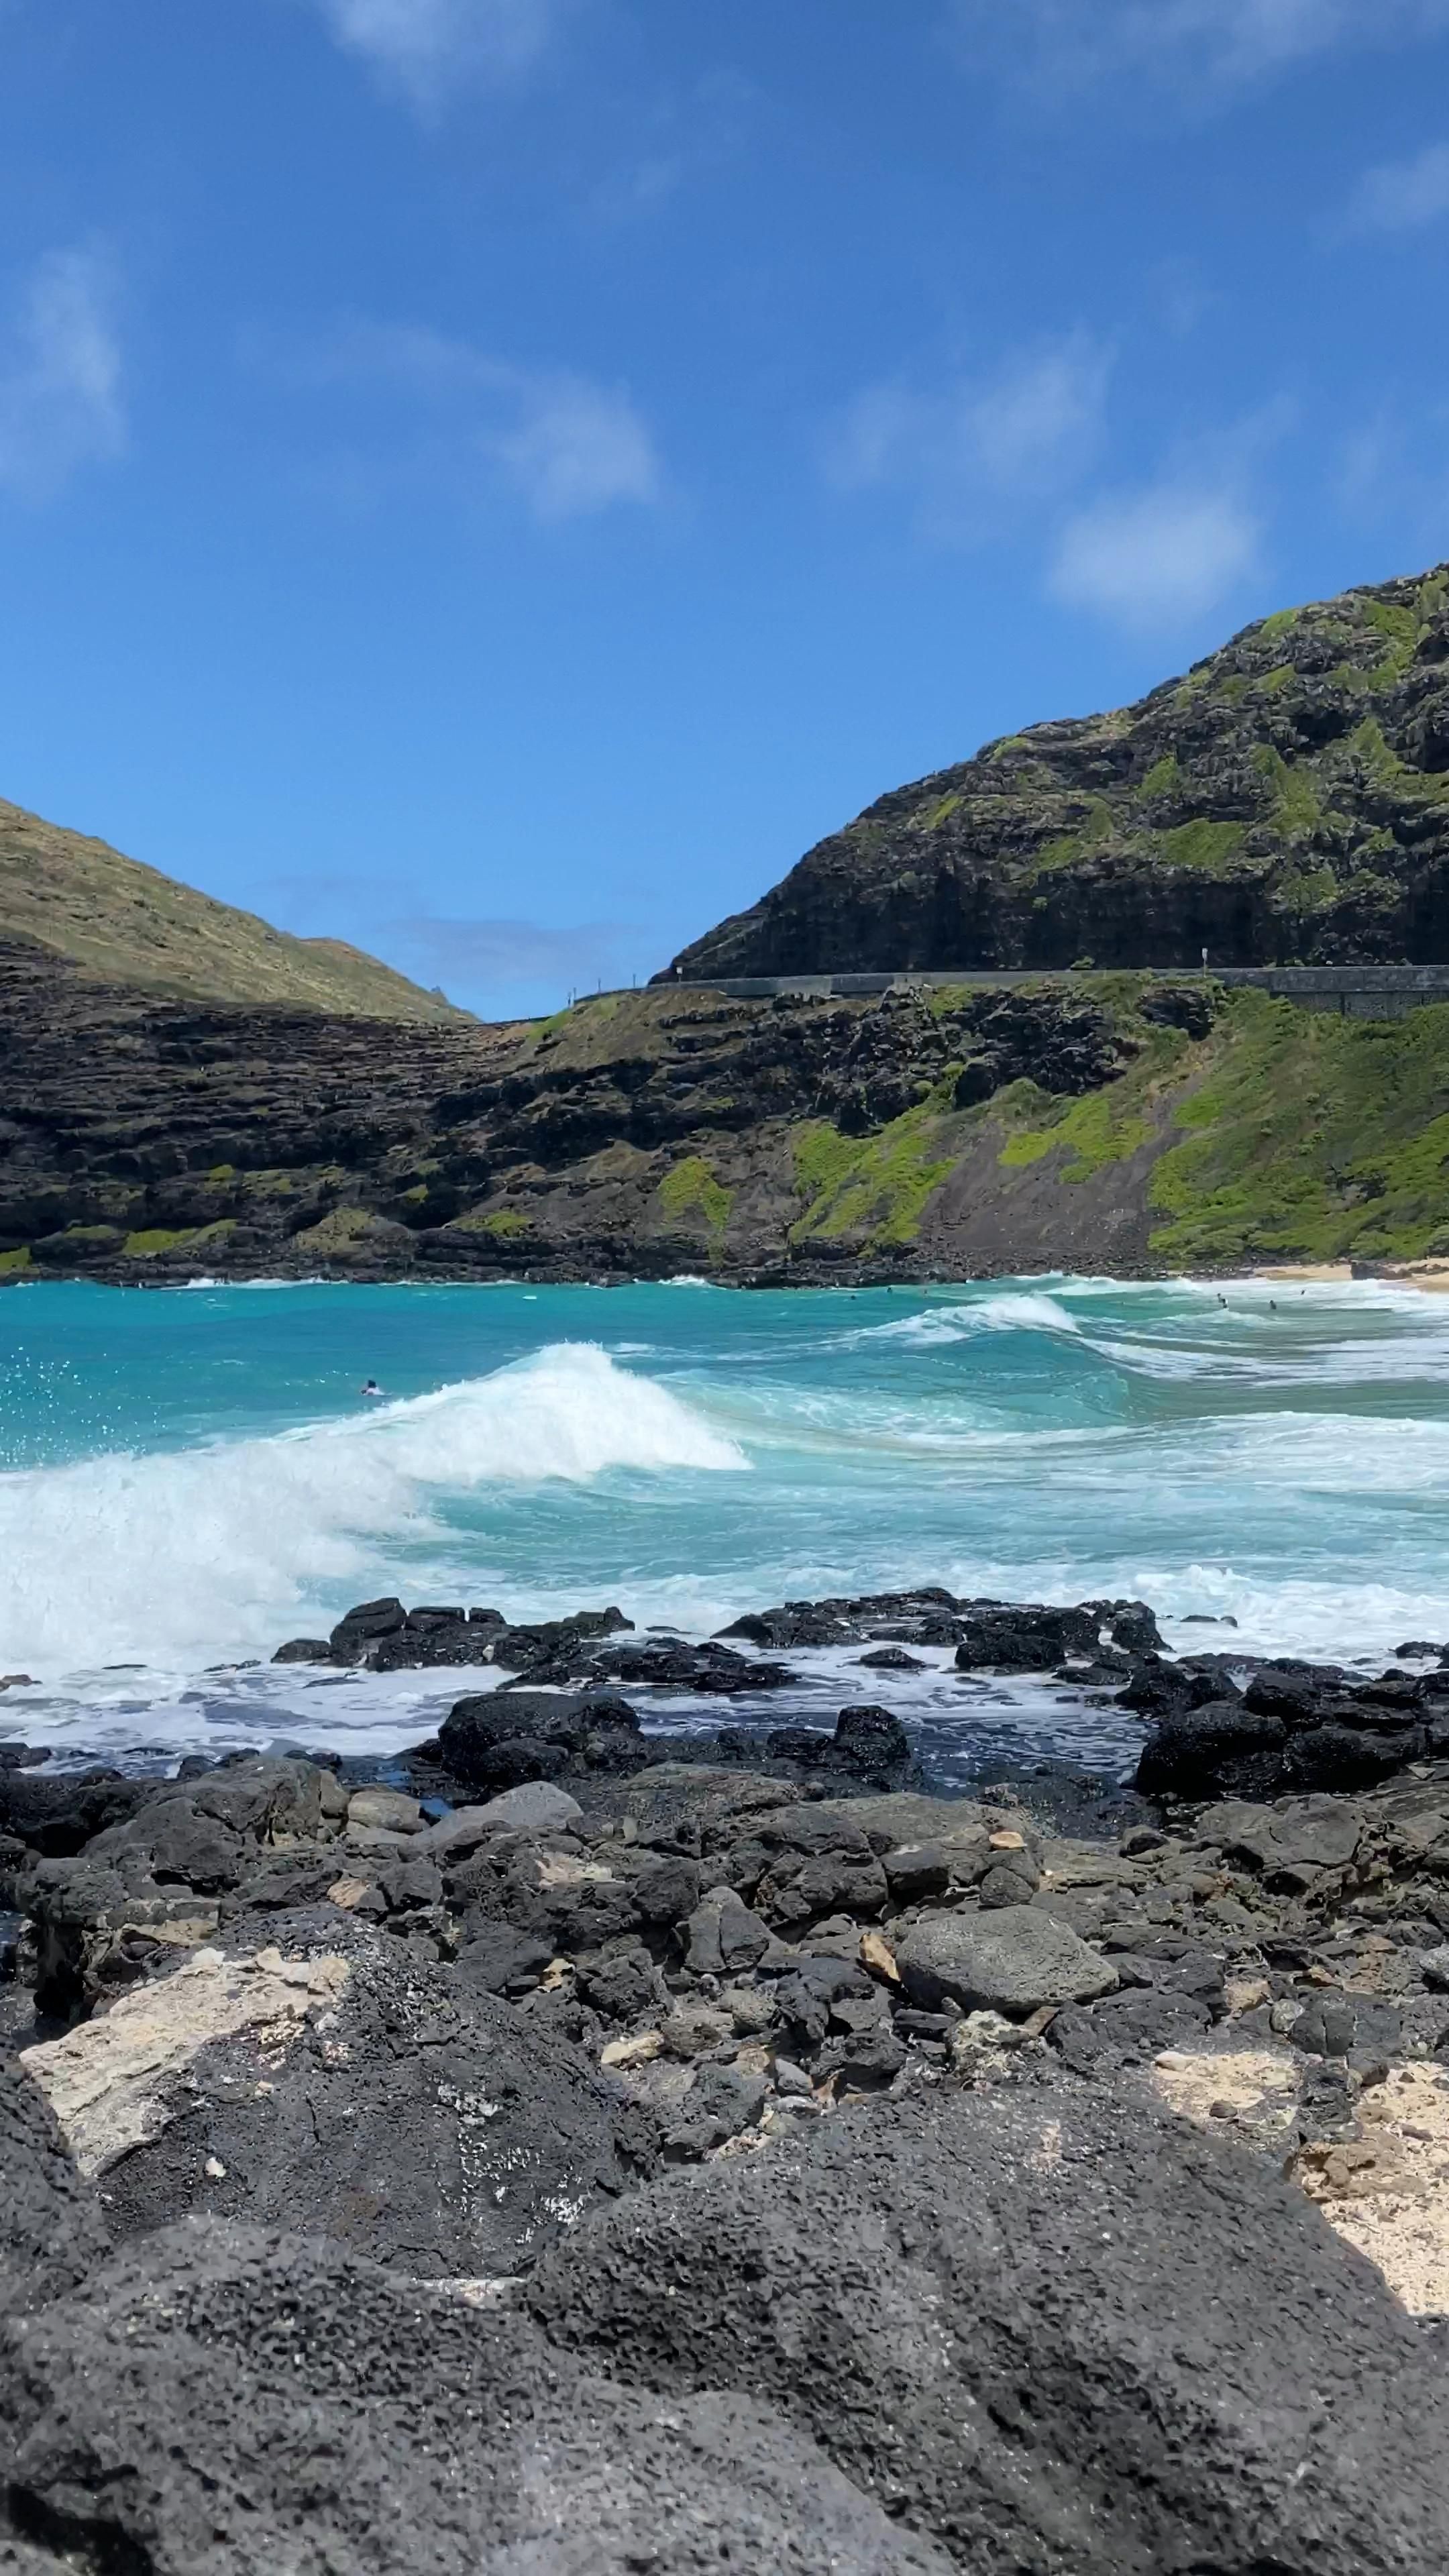 Hawaii waves, Hawaii honeymoon, Ocean adventures, Photographic beauty, 2160x3840 4K Handy